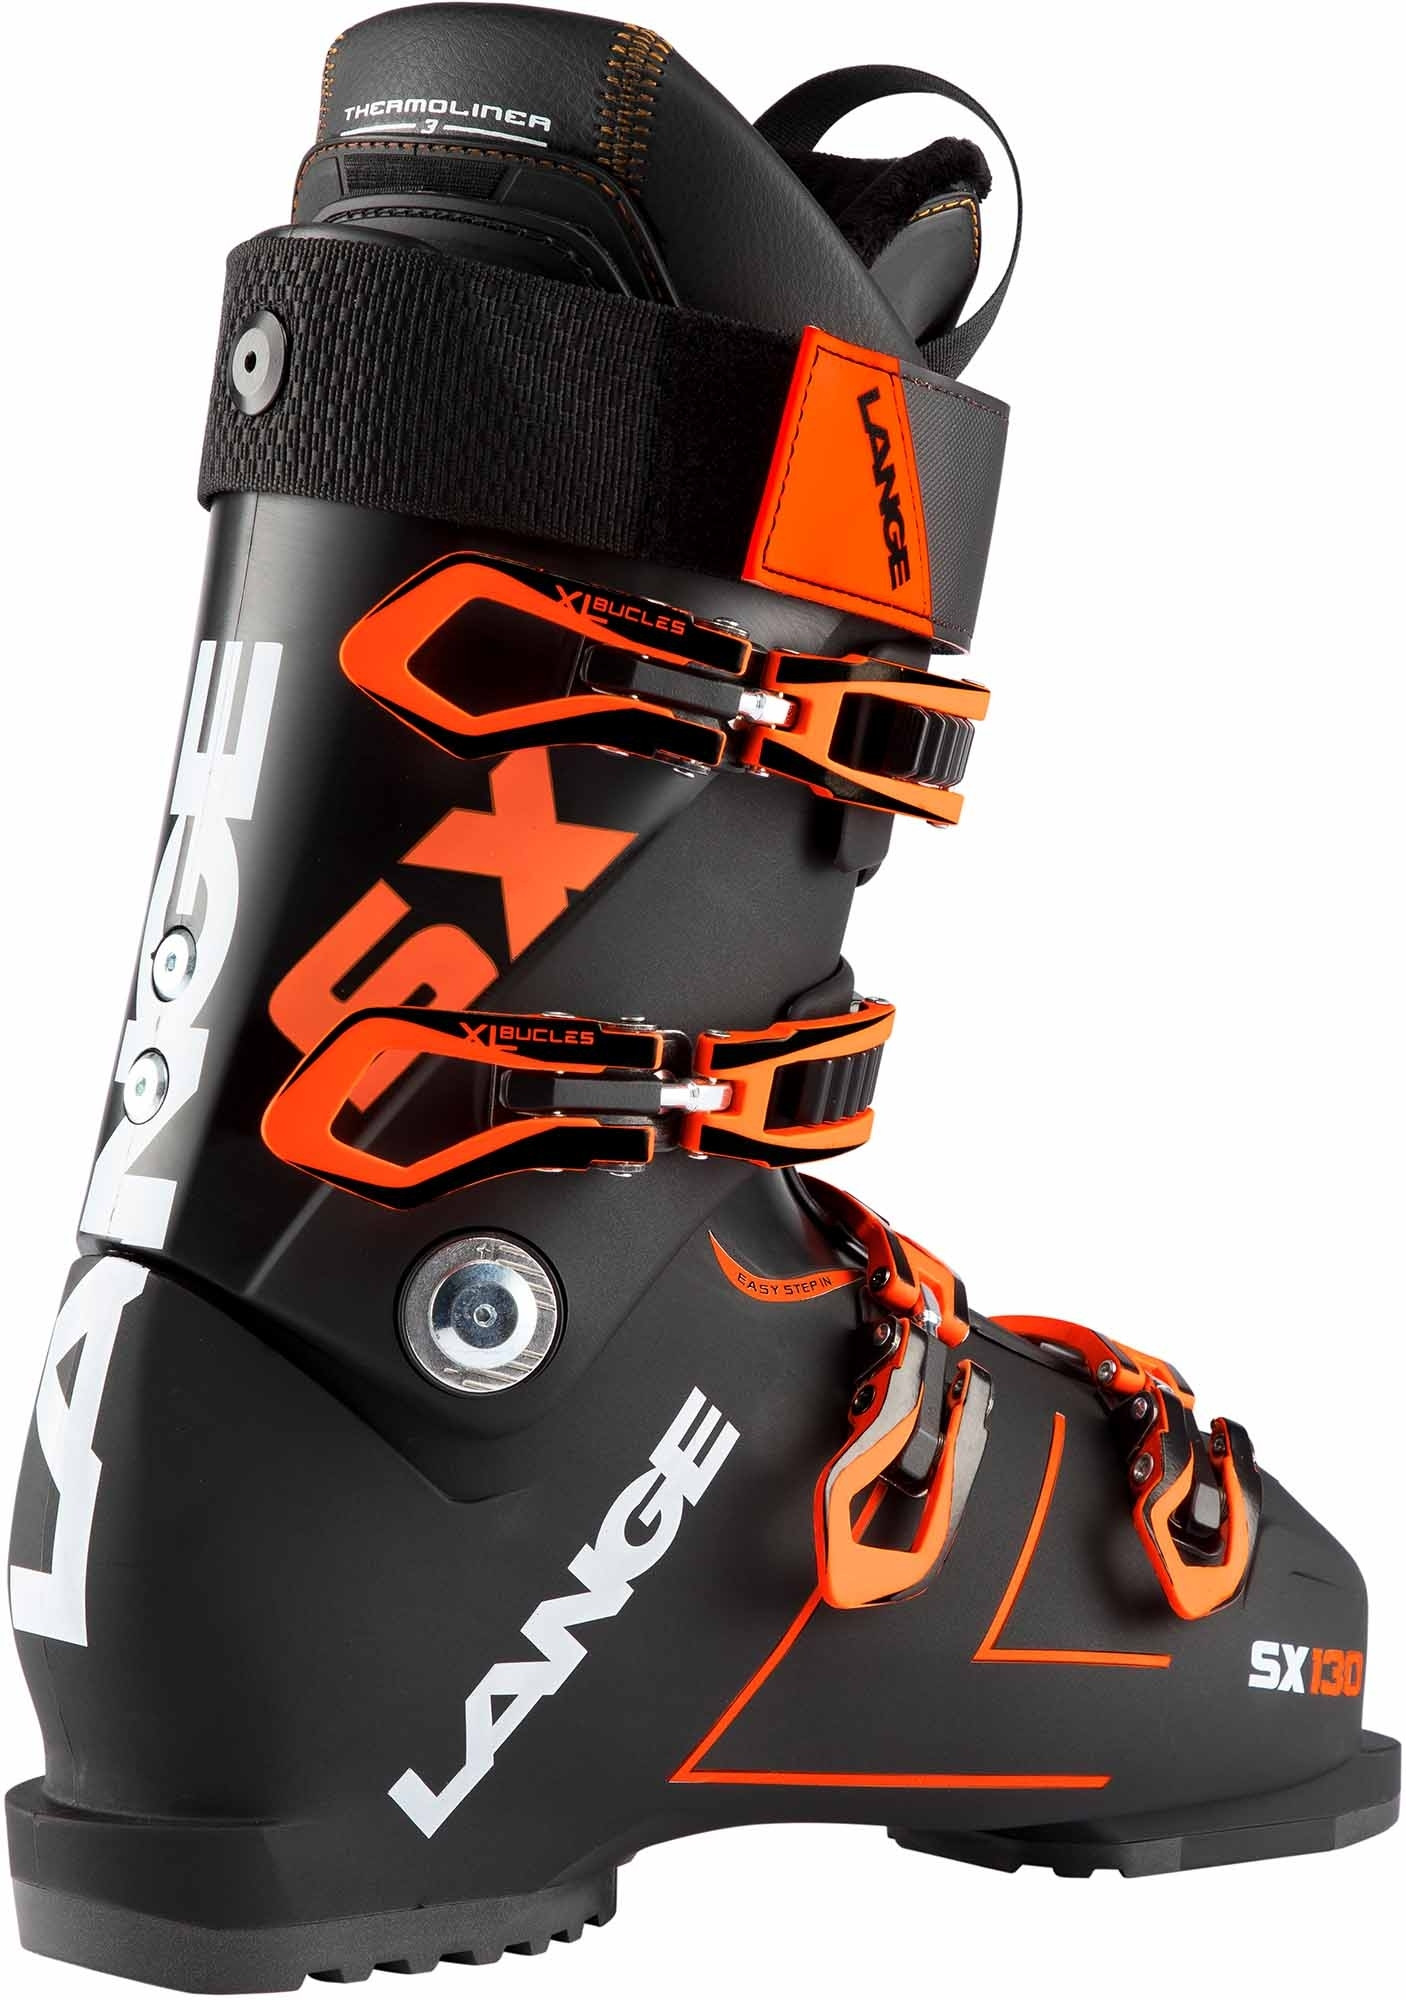 Chaussures De Ski Lange Sx 130 (black-orange) Homme - Livraison Gratuite !